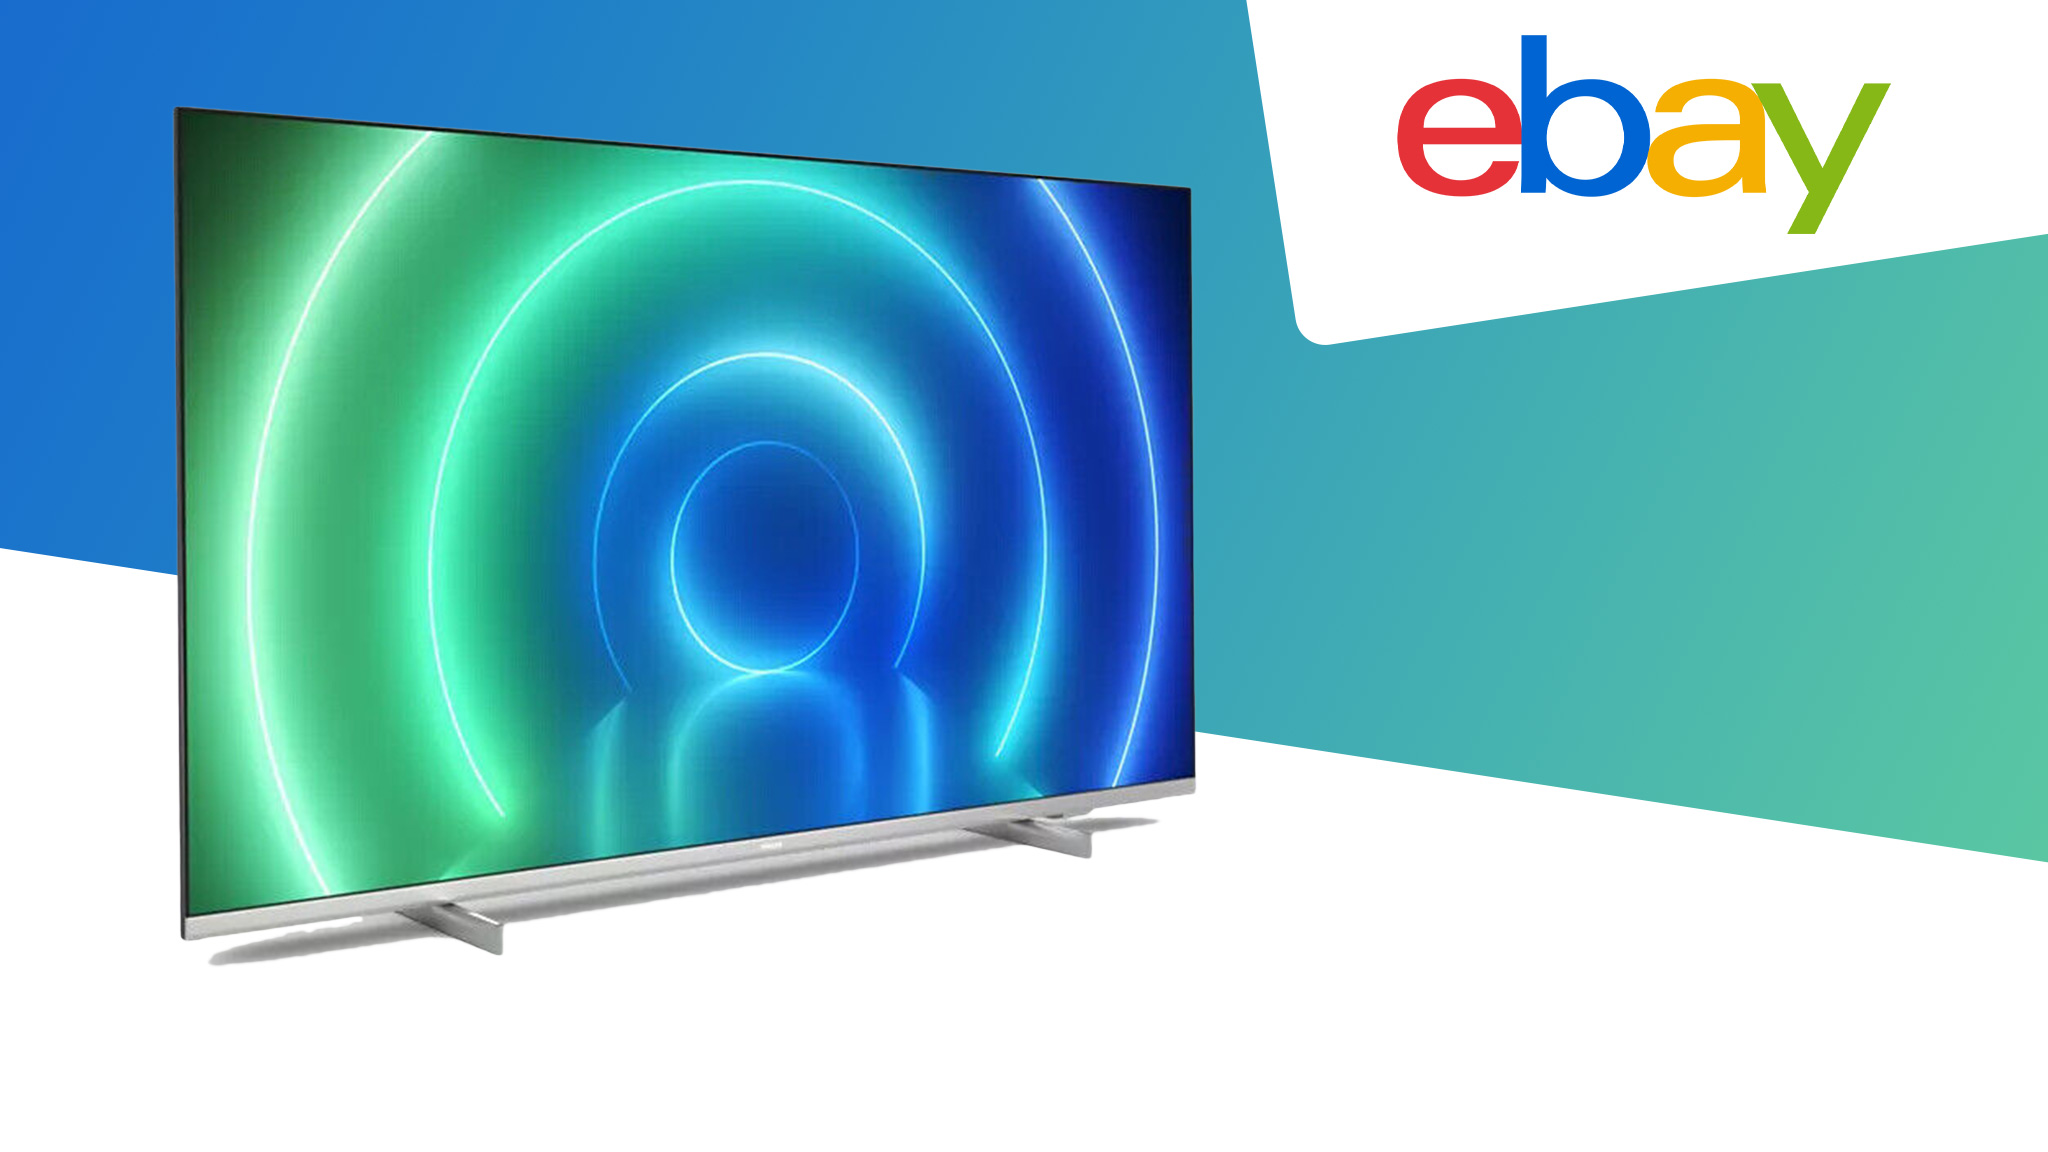 Philips-TV mit 43 Zoll zum Bestpreis bei Ebay! 4K-Gerät für unter 280 Euro